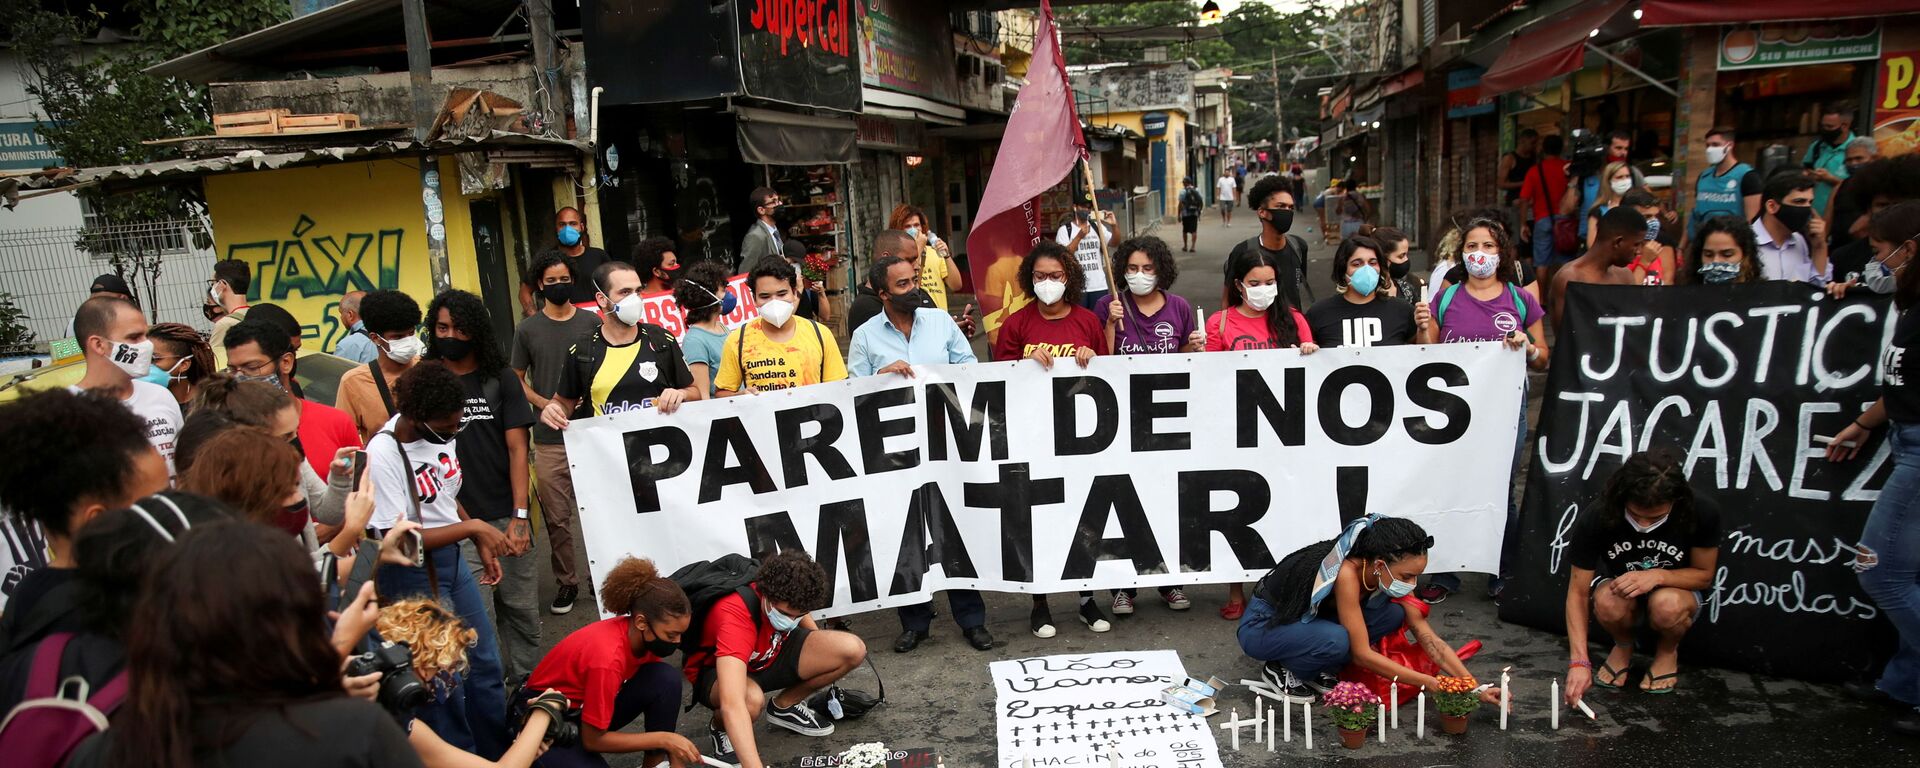 Protesto contra operação policial que deixou 28 mortos na favela do Jacarezinho, no Rio de Janeiro - Sputnik Brasil, 1920, 07.05.2021